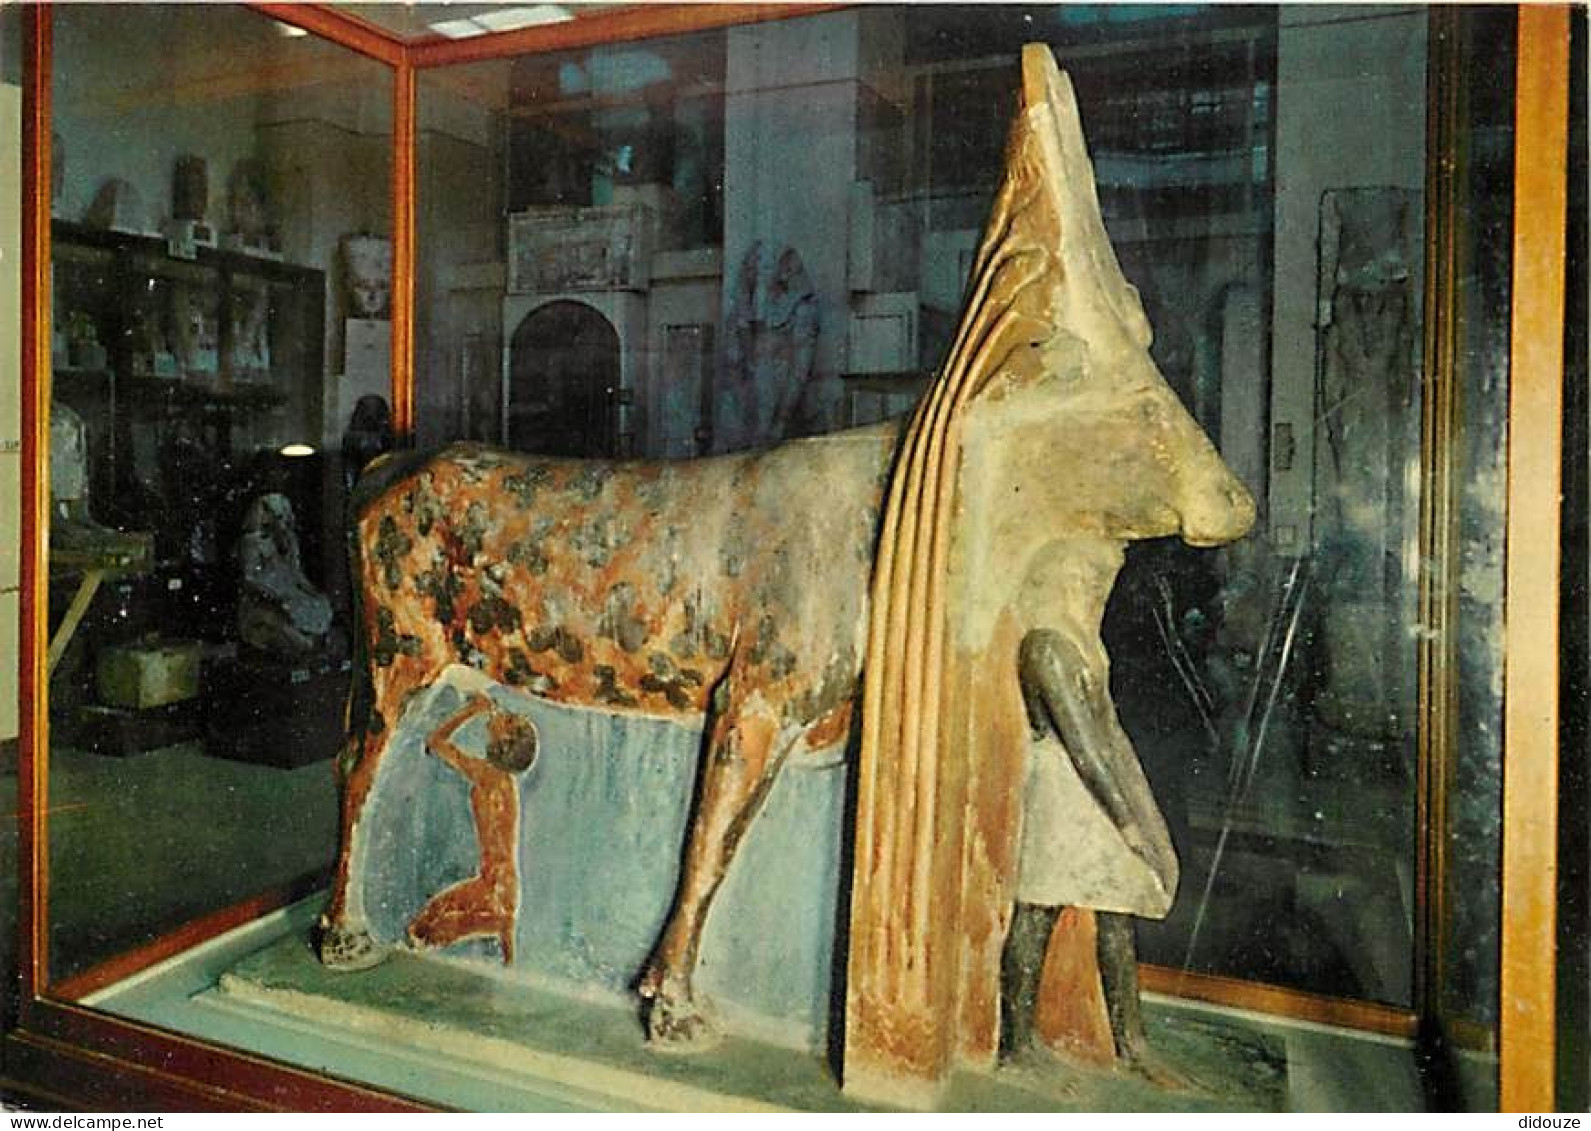 Egypte - Le Caire - Cairo - Musée Archéologique - Antiquité Egyptienne - King Amenhotep II Beneath The Hathor Cow - 1450 - Musea